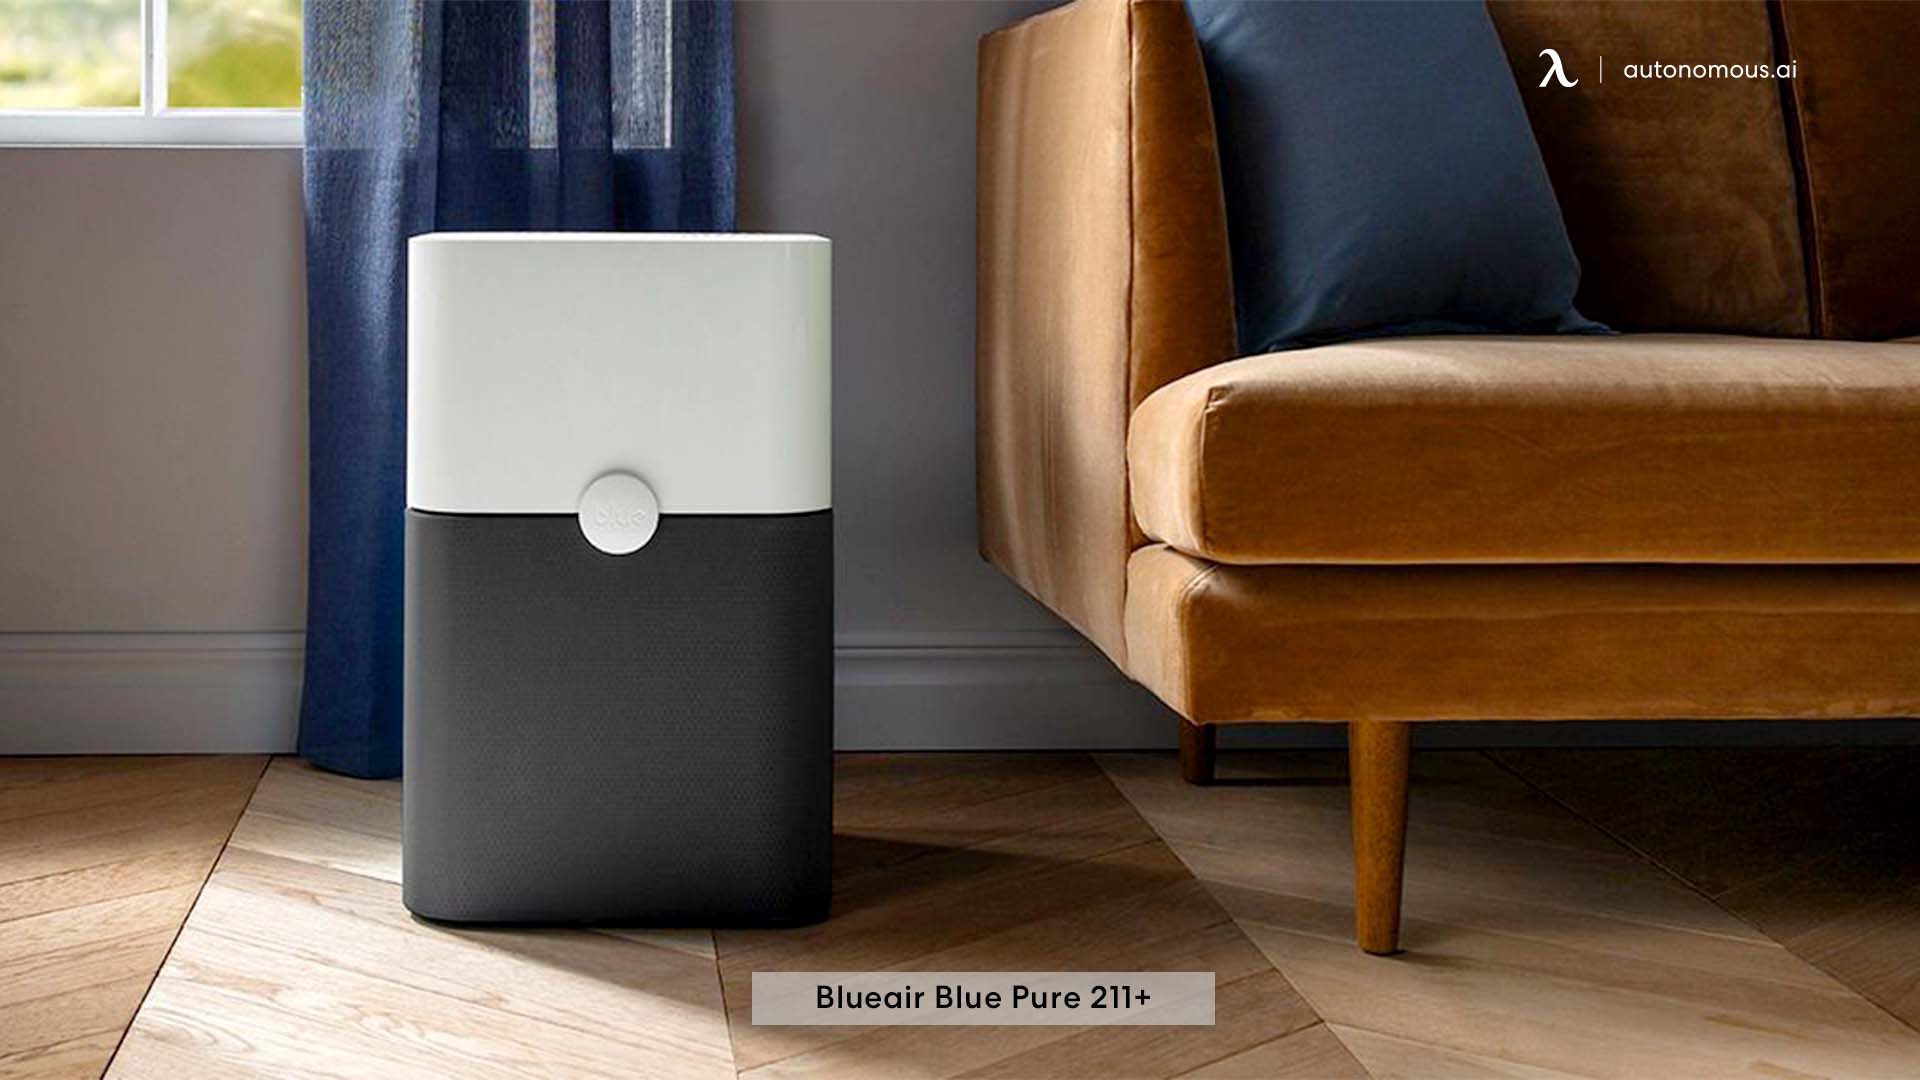 Blueair Blue Pure 211+ air purifier for office